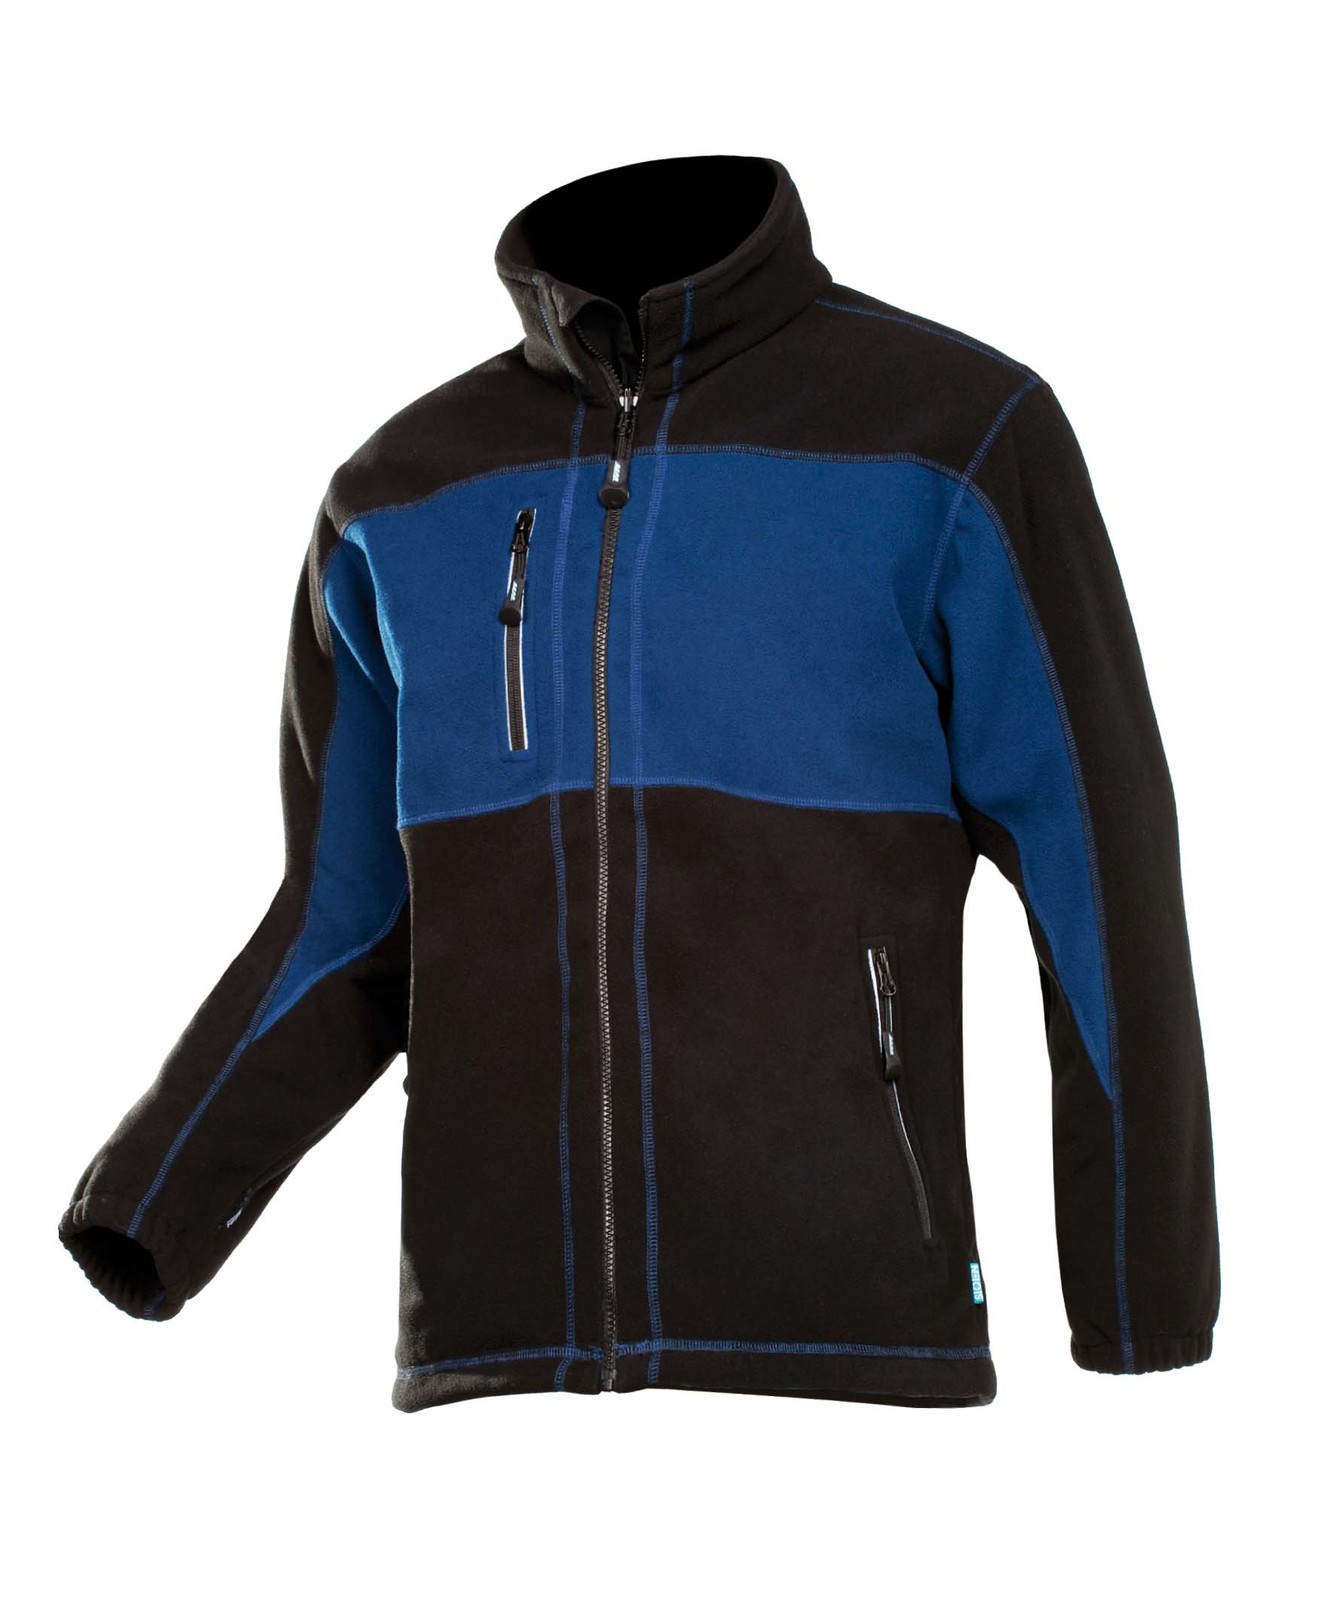 Fleece bunda Durango pánska - veľkosť: XL, farba: modrá/čierna